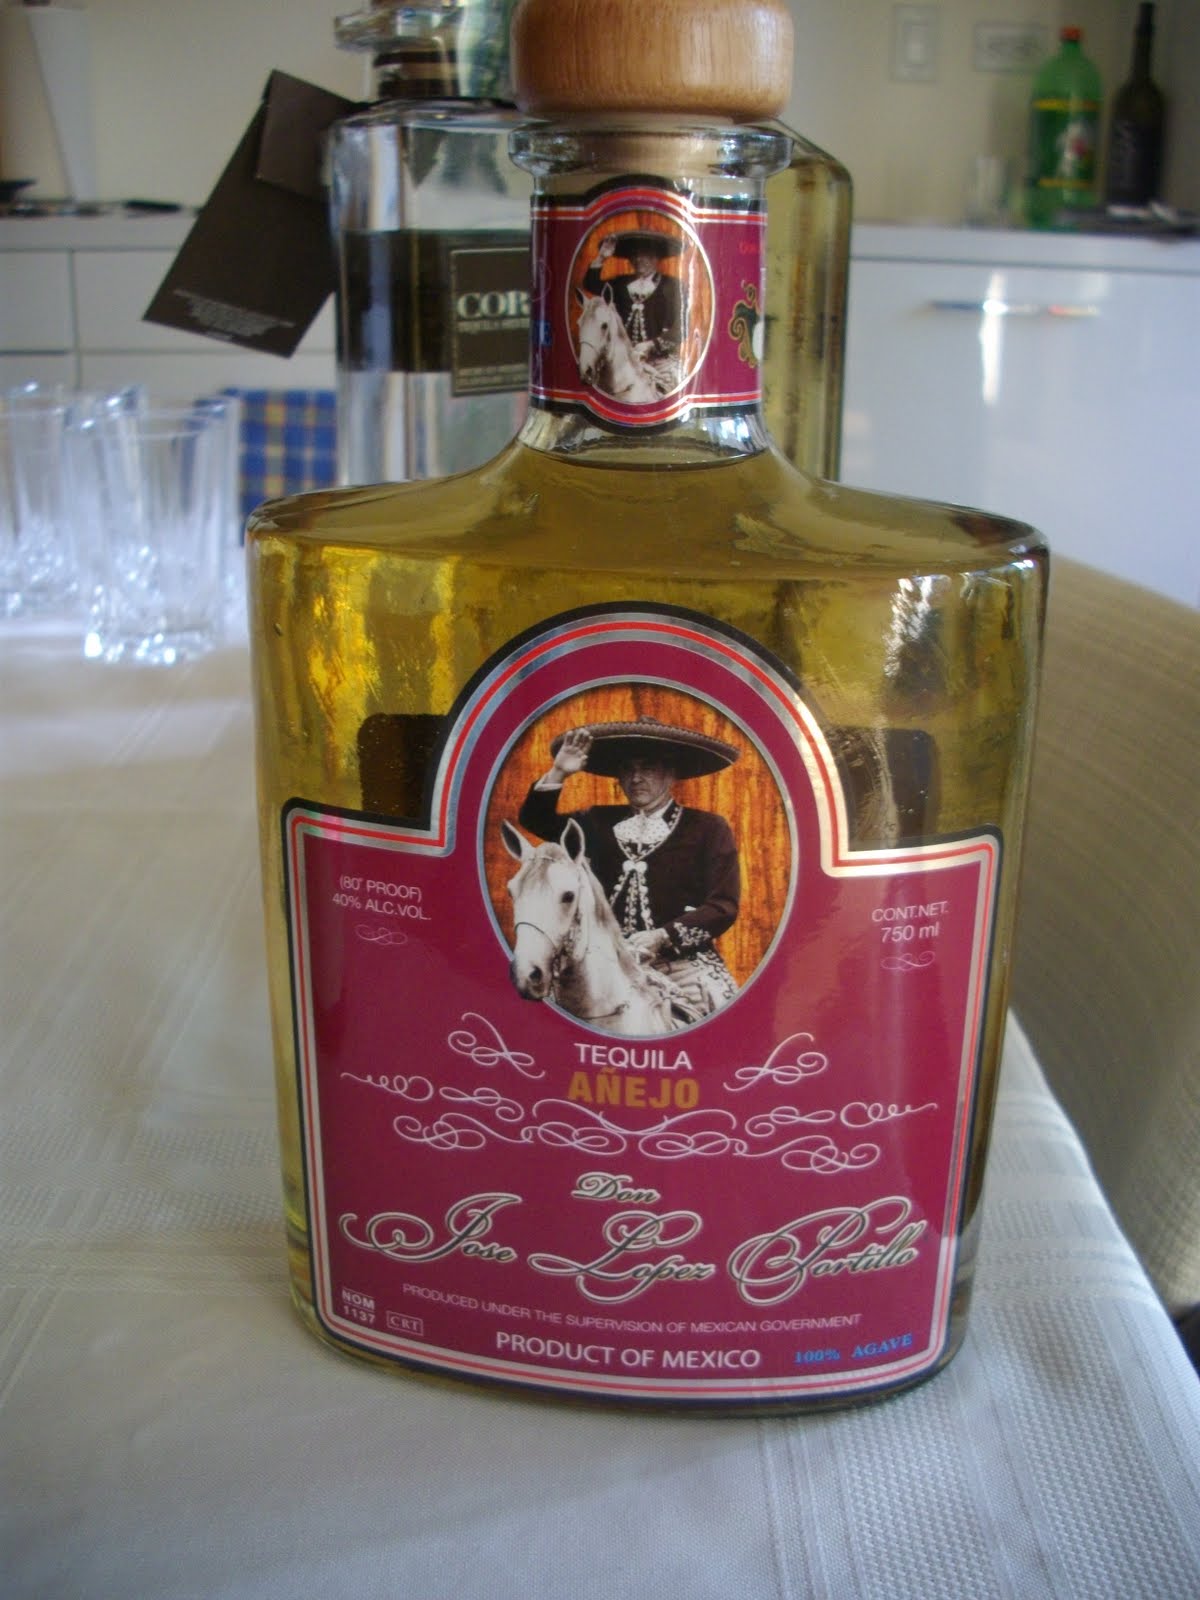 Jose Lopez Portillo Tequila